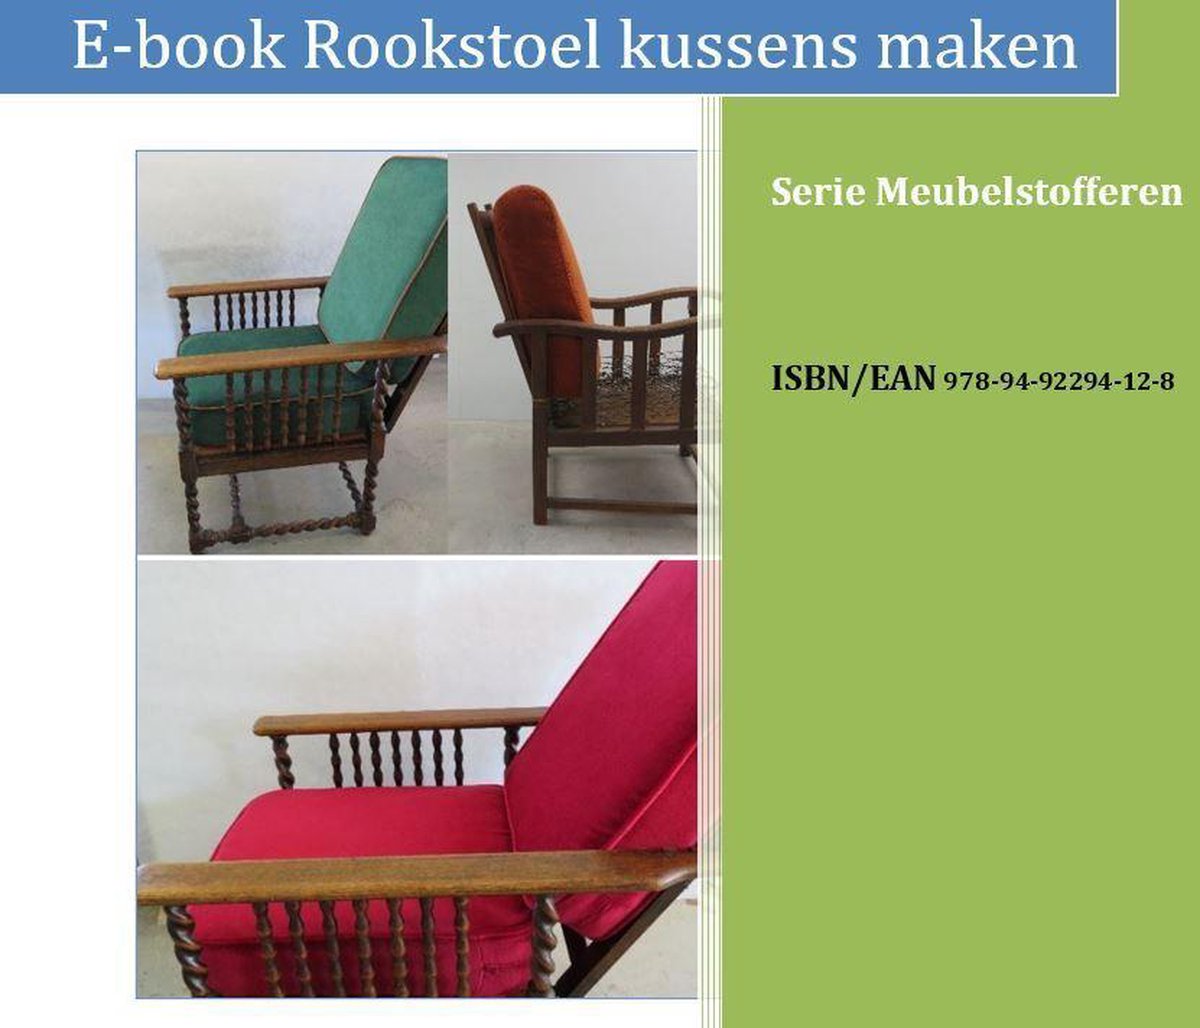 Serie meubelstofferen 12 - Rookstoel kussens maken (ebook), Marja Kooreman  |... | bol.com